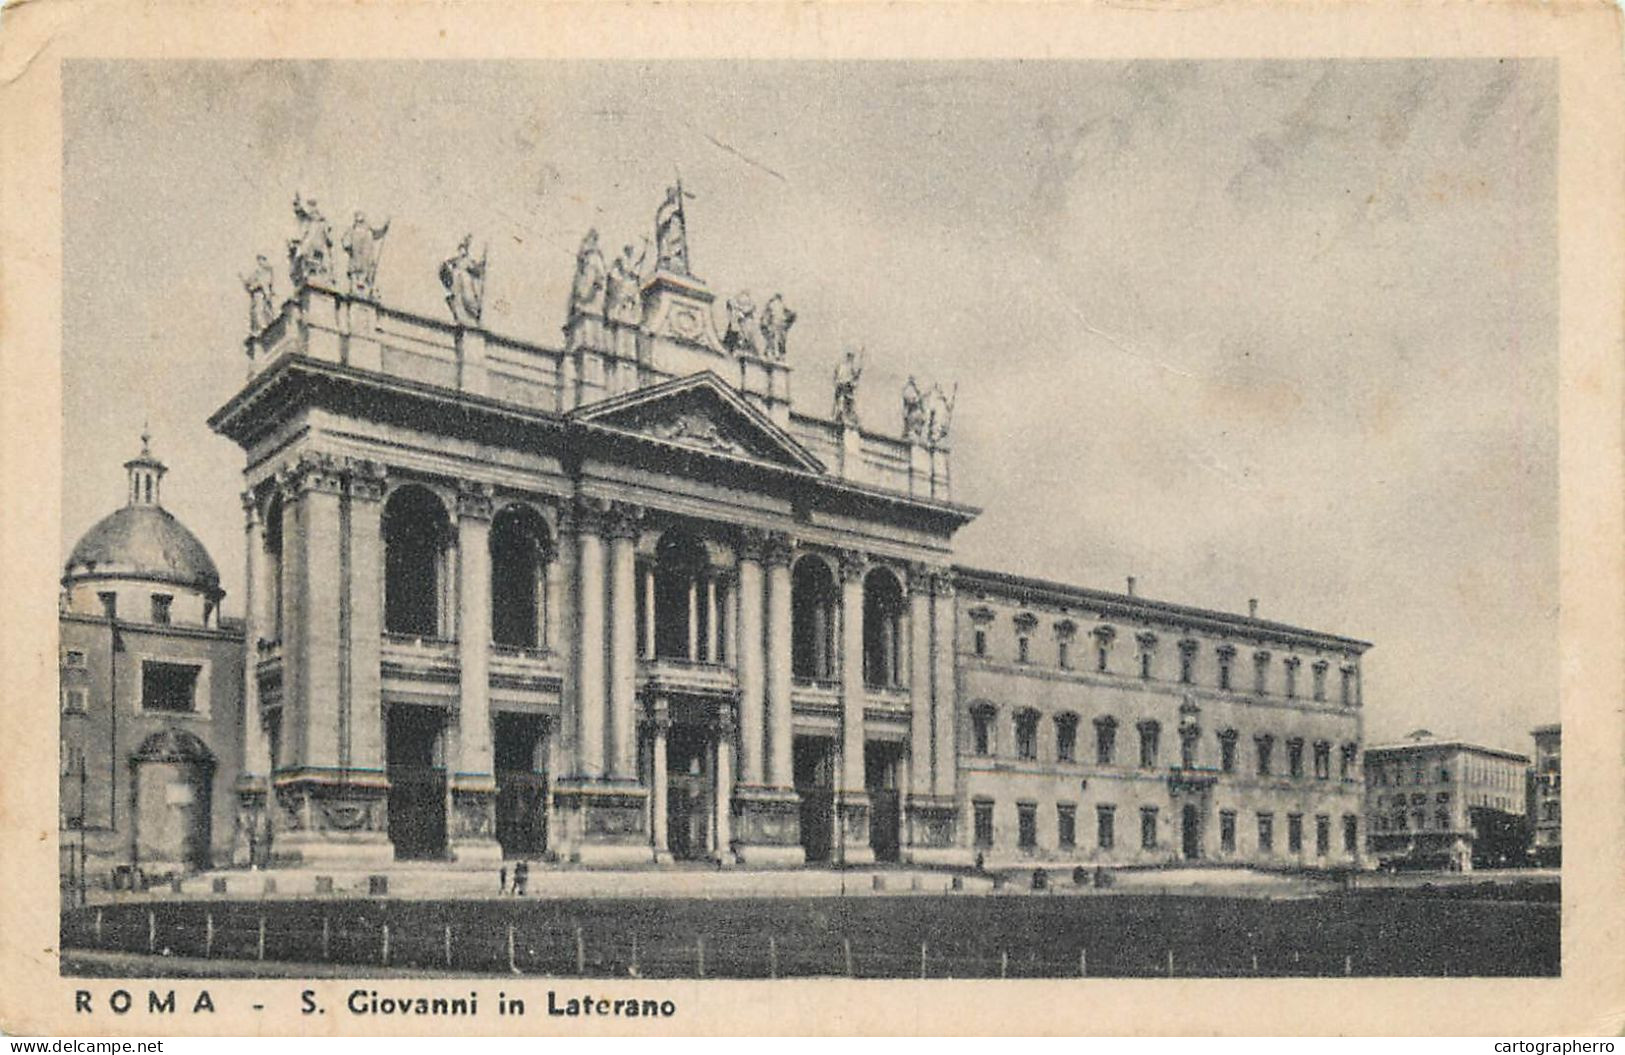 Postcard Italy Rome San Giovanni In Laterano - Andere Monumente & Gebäude